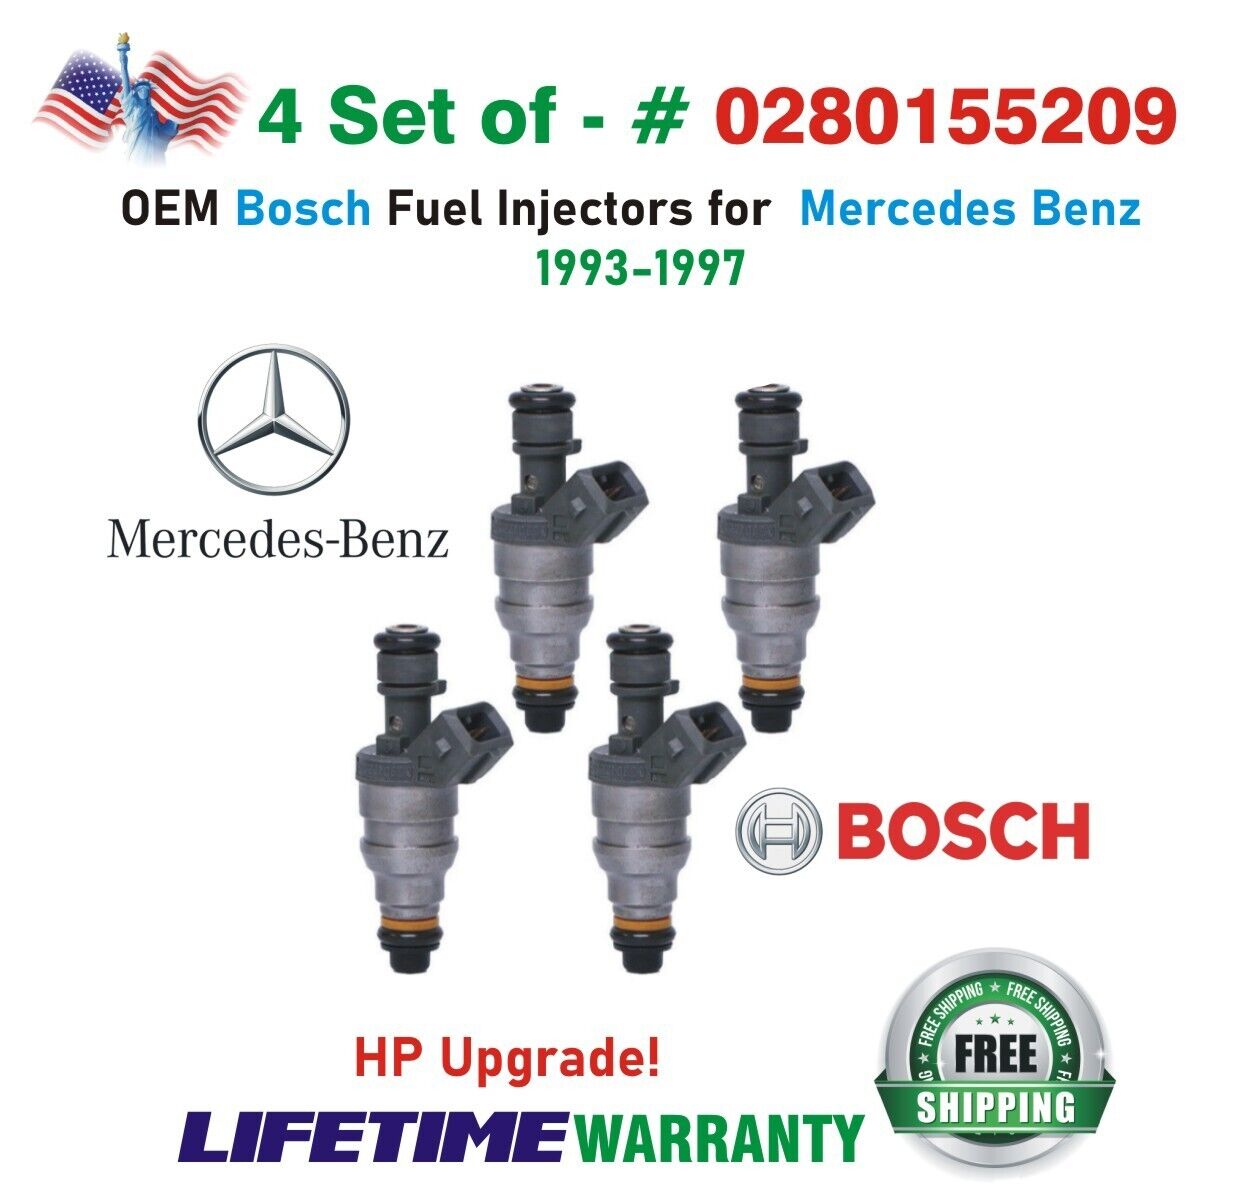 Genuine Bosch 4Pcs HP Upgrade Fuel Injectors for 1993-1997 Mercedes Benz I4 & I6